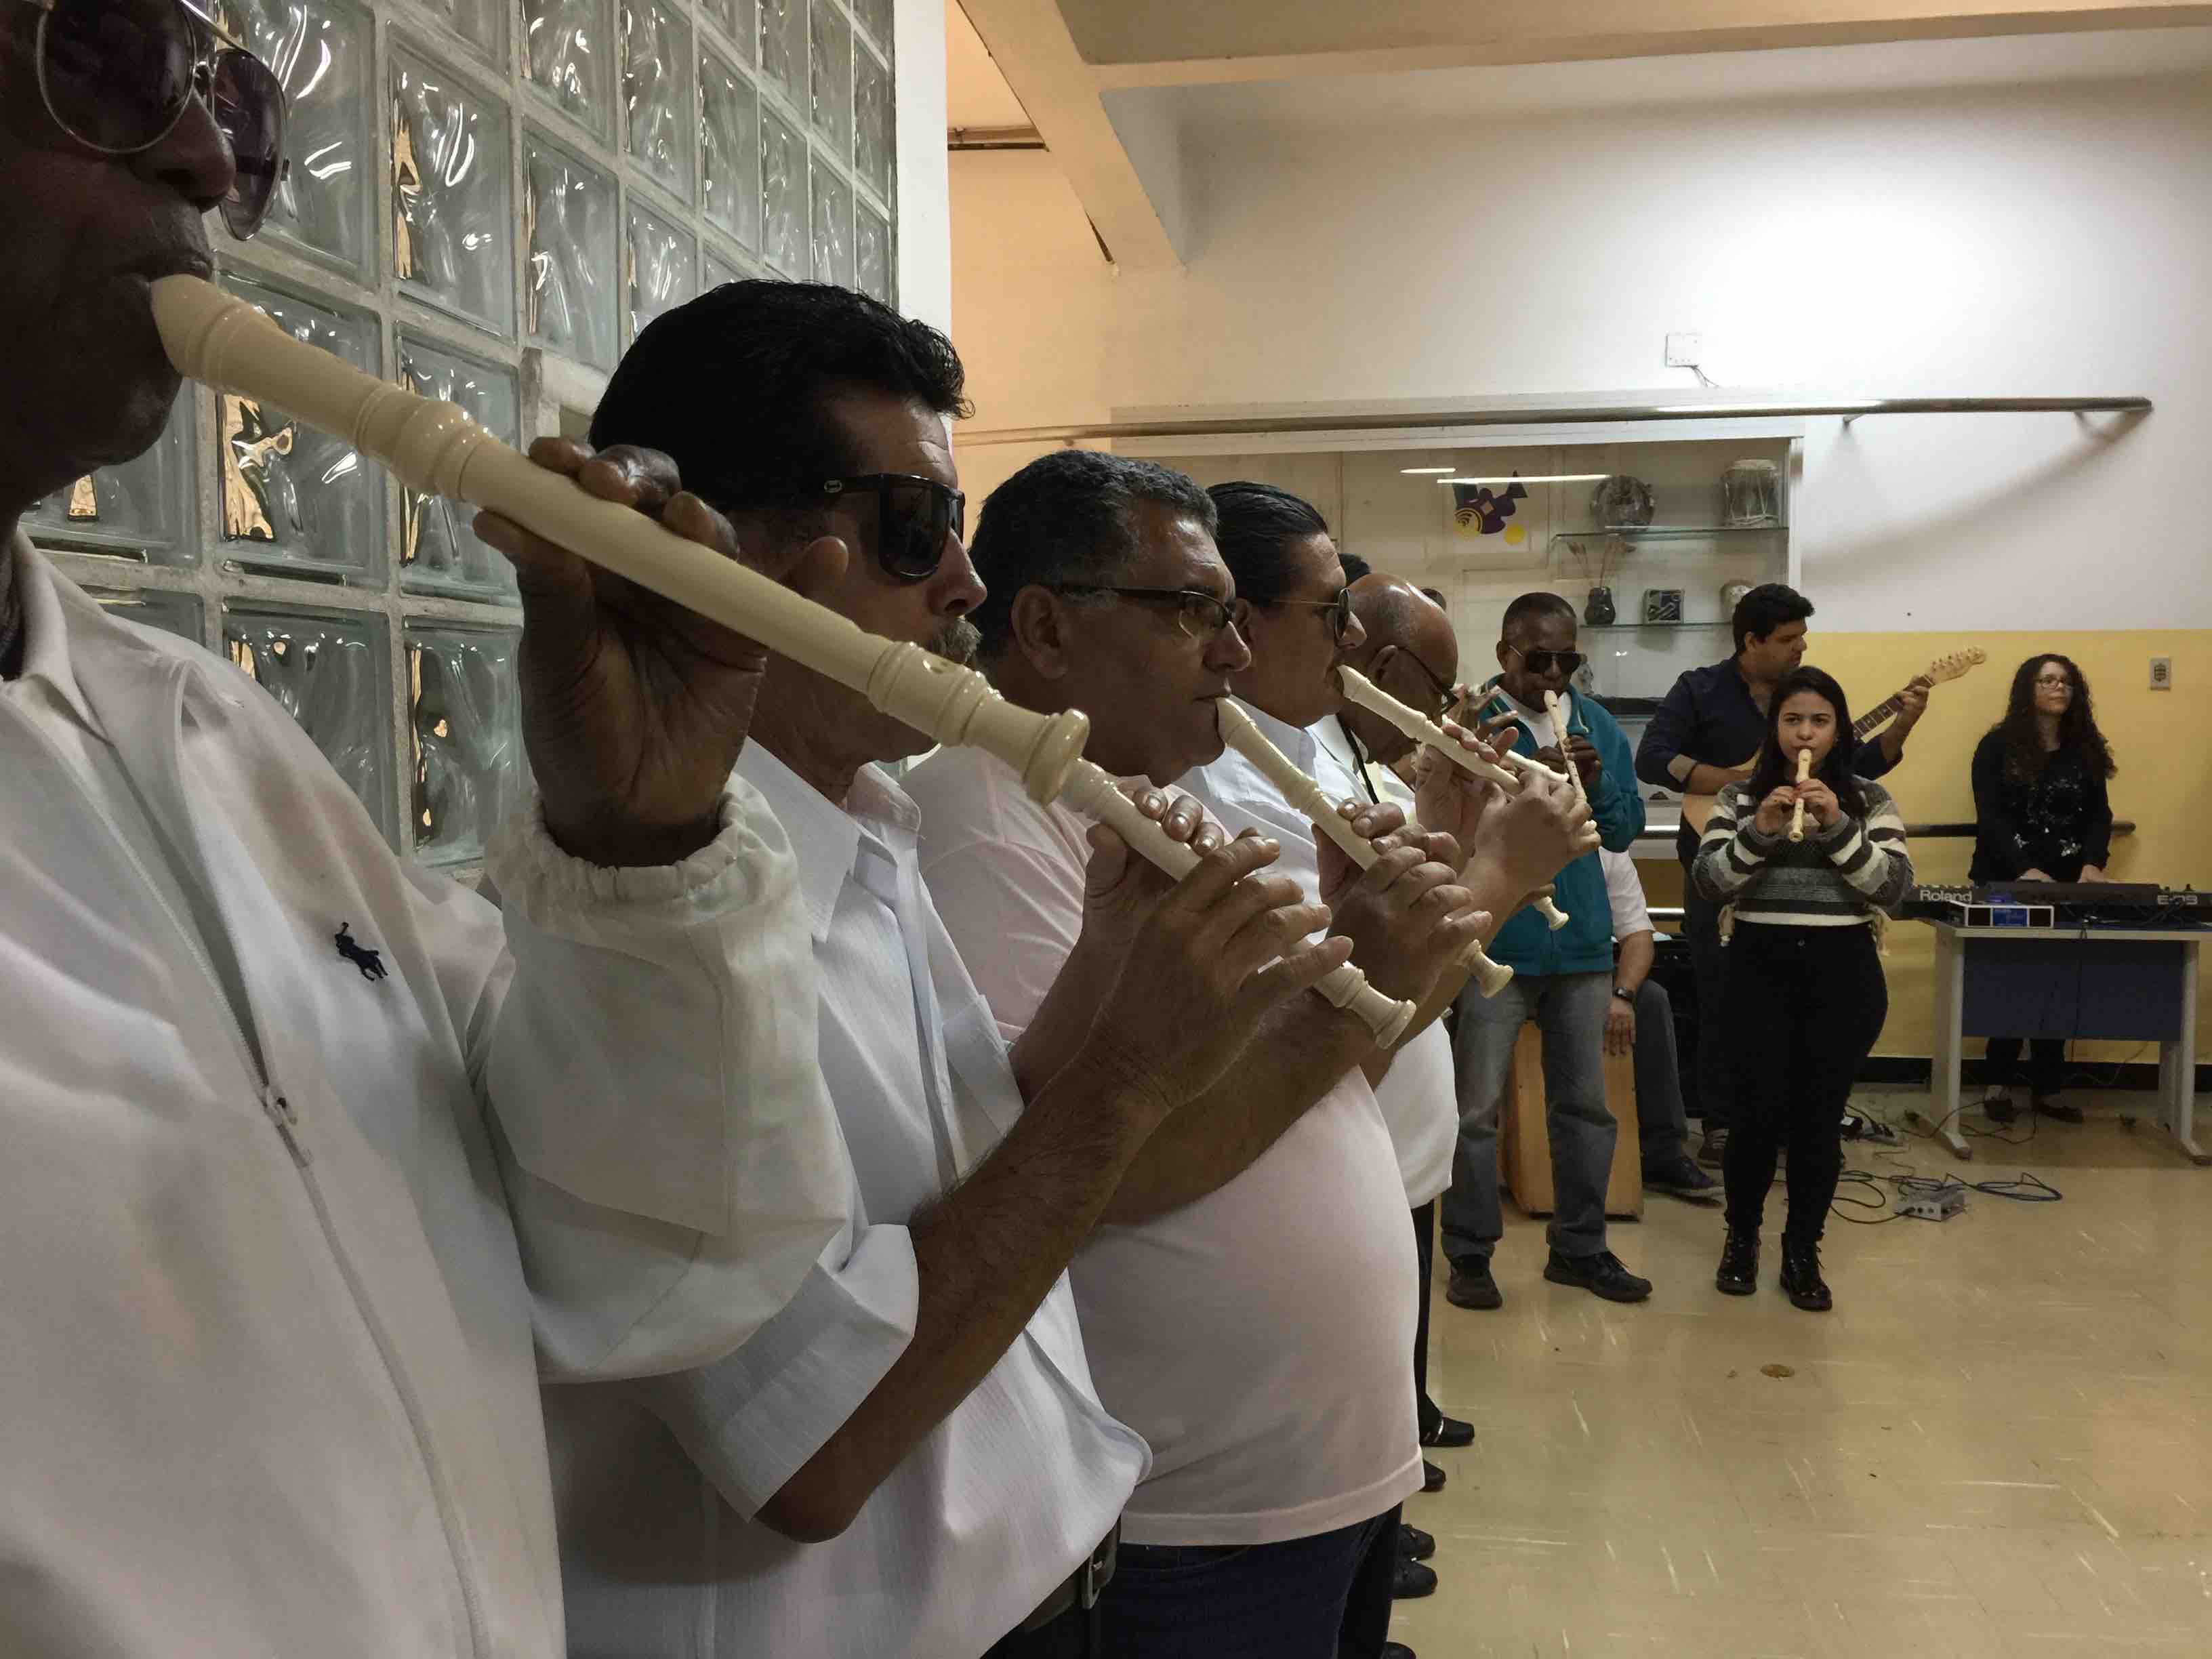 Descrição da imagem: adultos, alunos da Reabilitação do IBC, perfilados, tocando flauta doce em apresentação no saguão de entrada do Instituto.